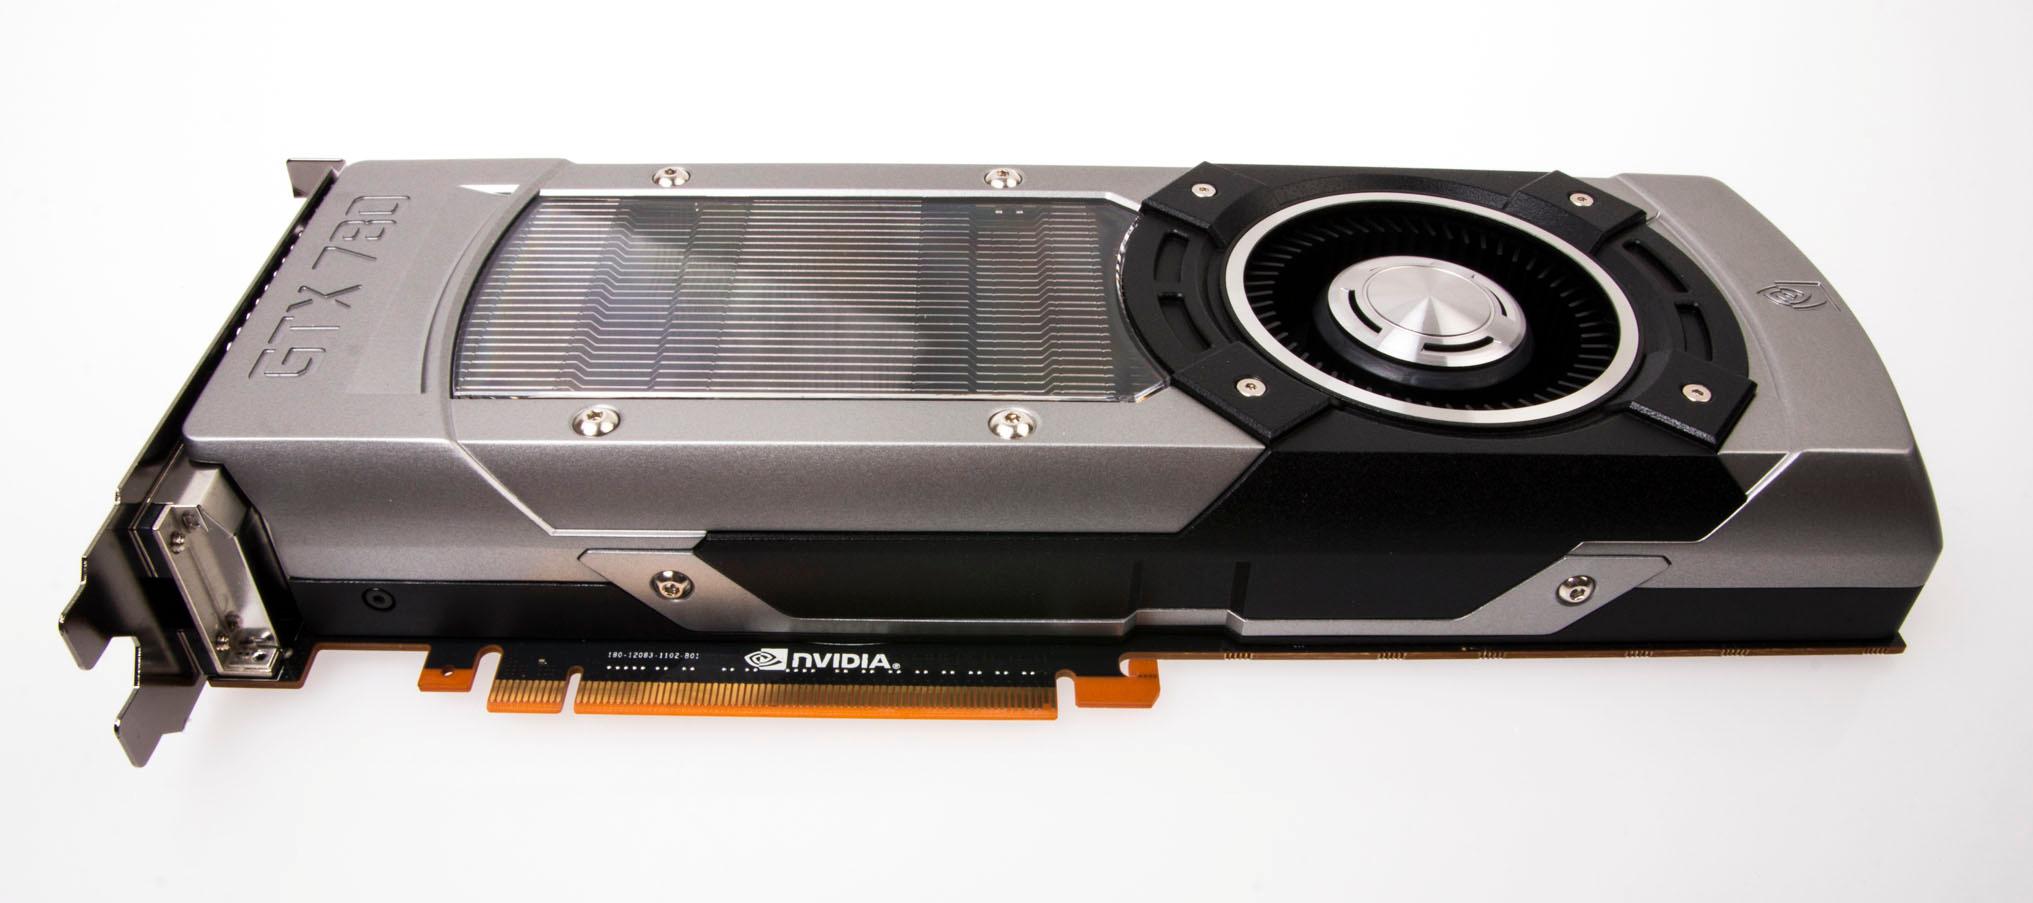 Nvidia GeForce GTX 780 er til forveksling lik GeForce GTX Titan, og veier 928 gram – kun 15 gram mindre enn storebroren.Foto: Varg Aamo, Hardware.no